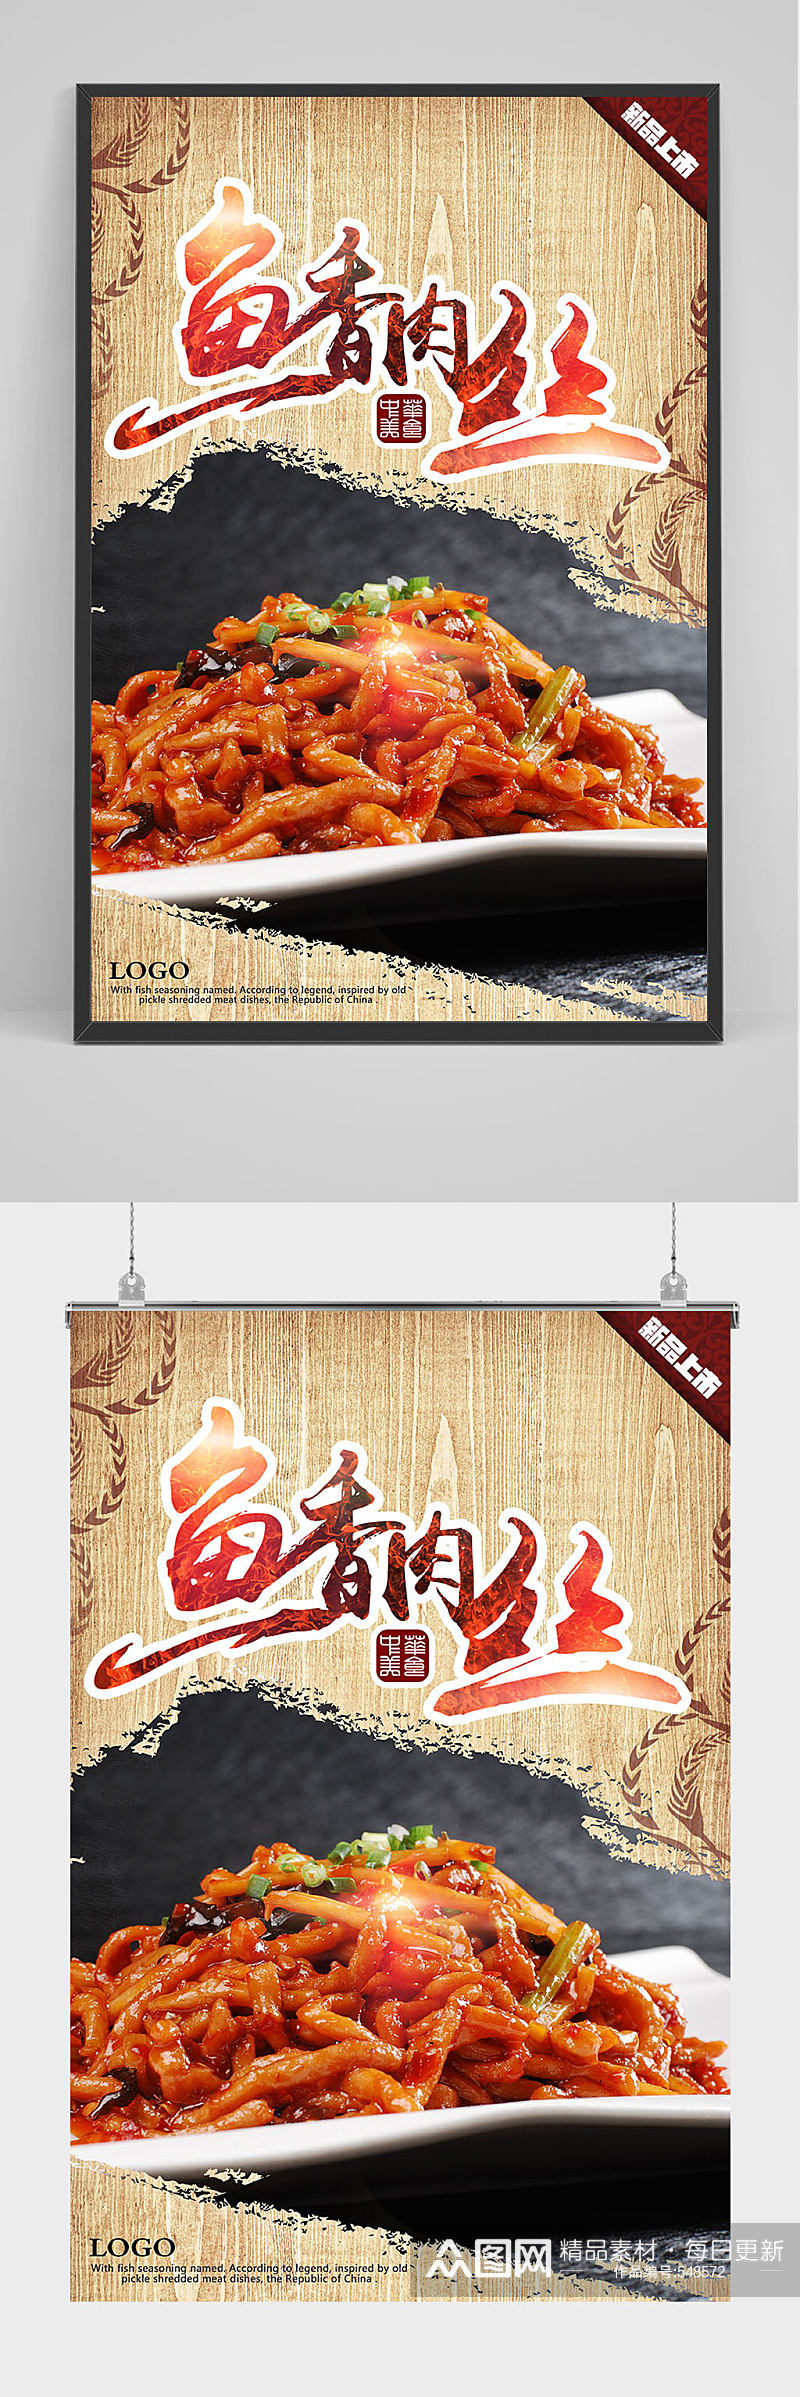 中华美食鱼香肉丝海报设计素材